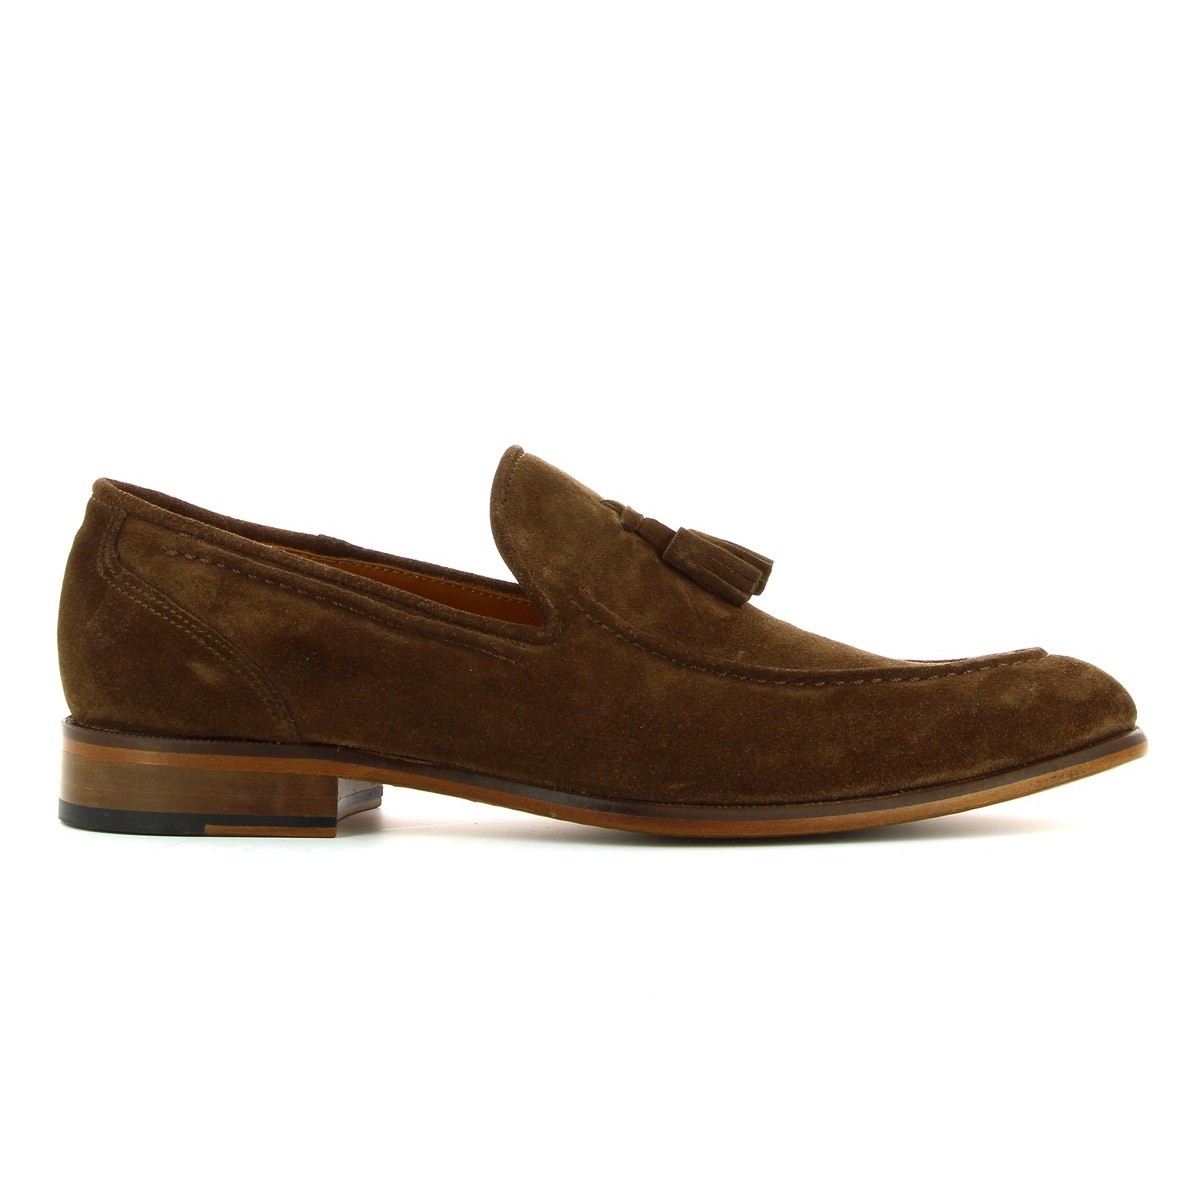 Bruber brown suede shoes for men | Bruno Bernardo | 360 images Size 39